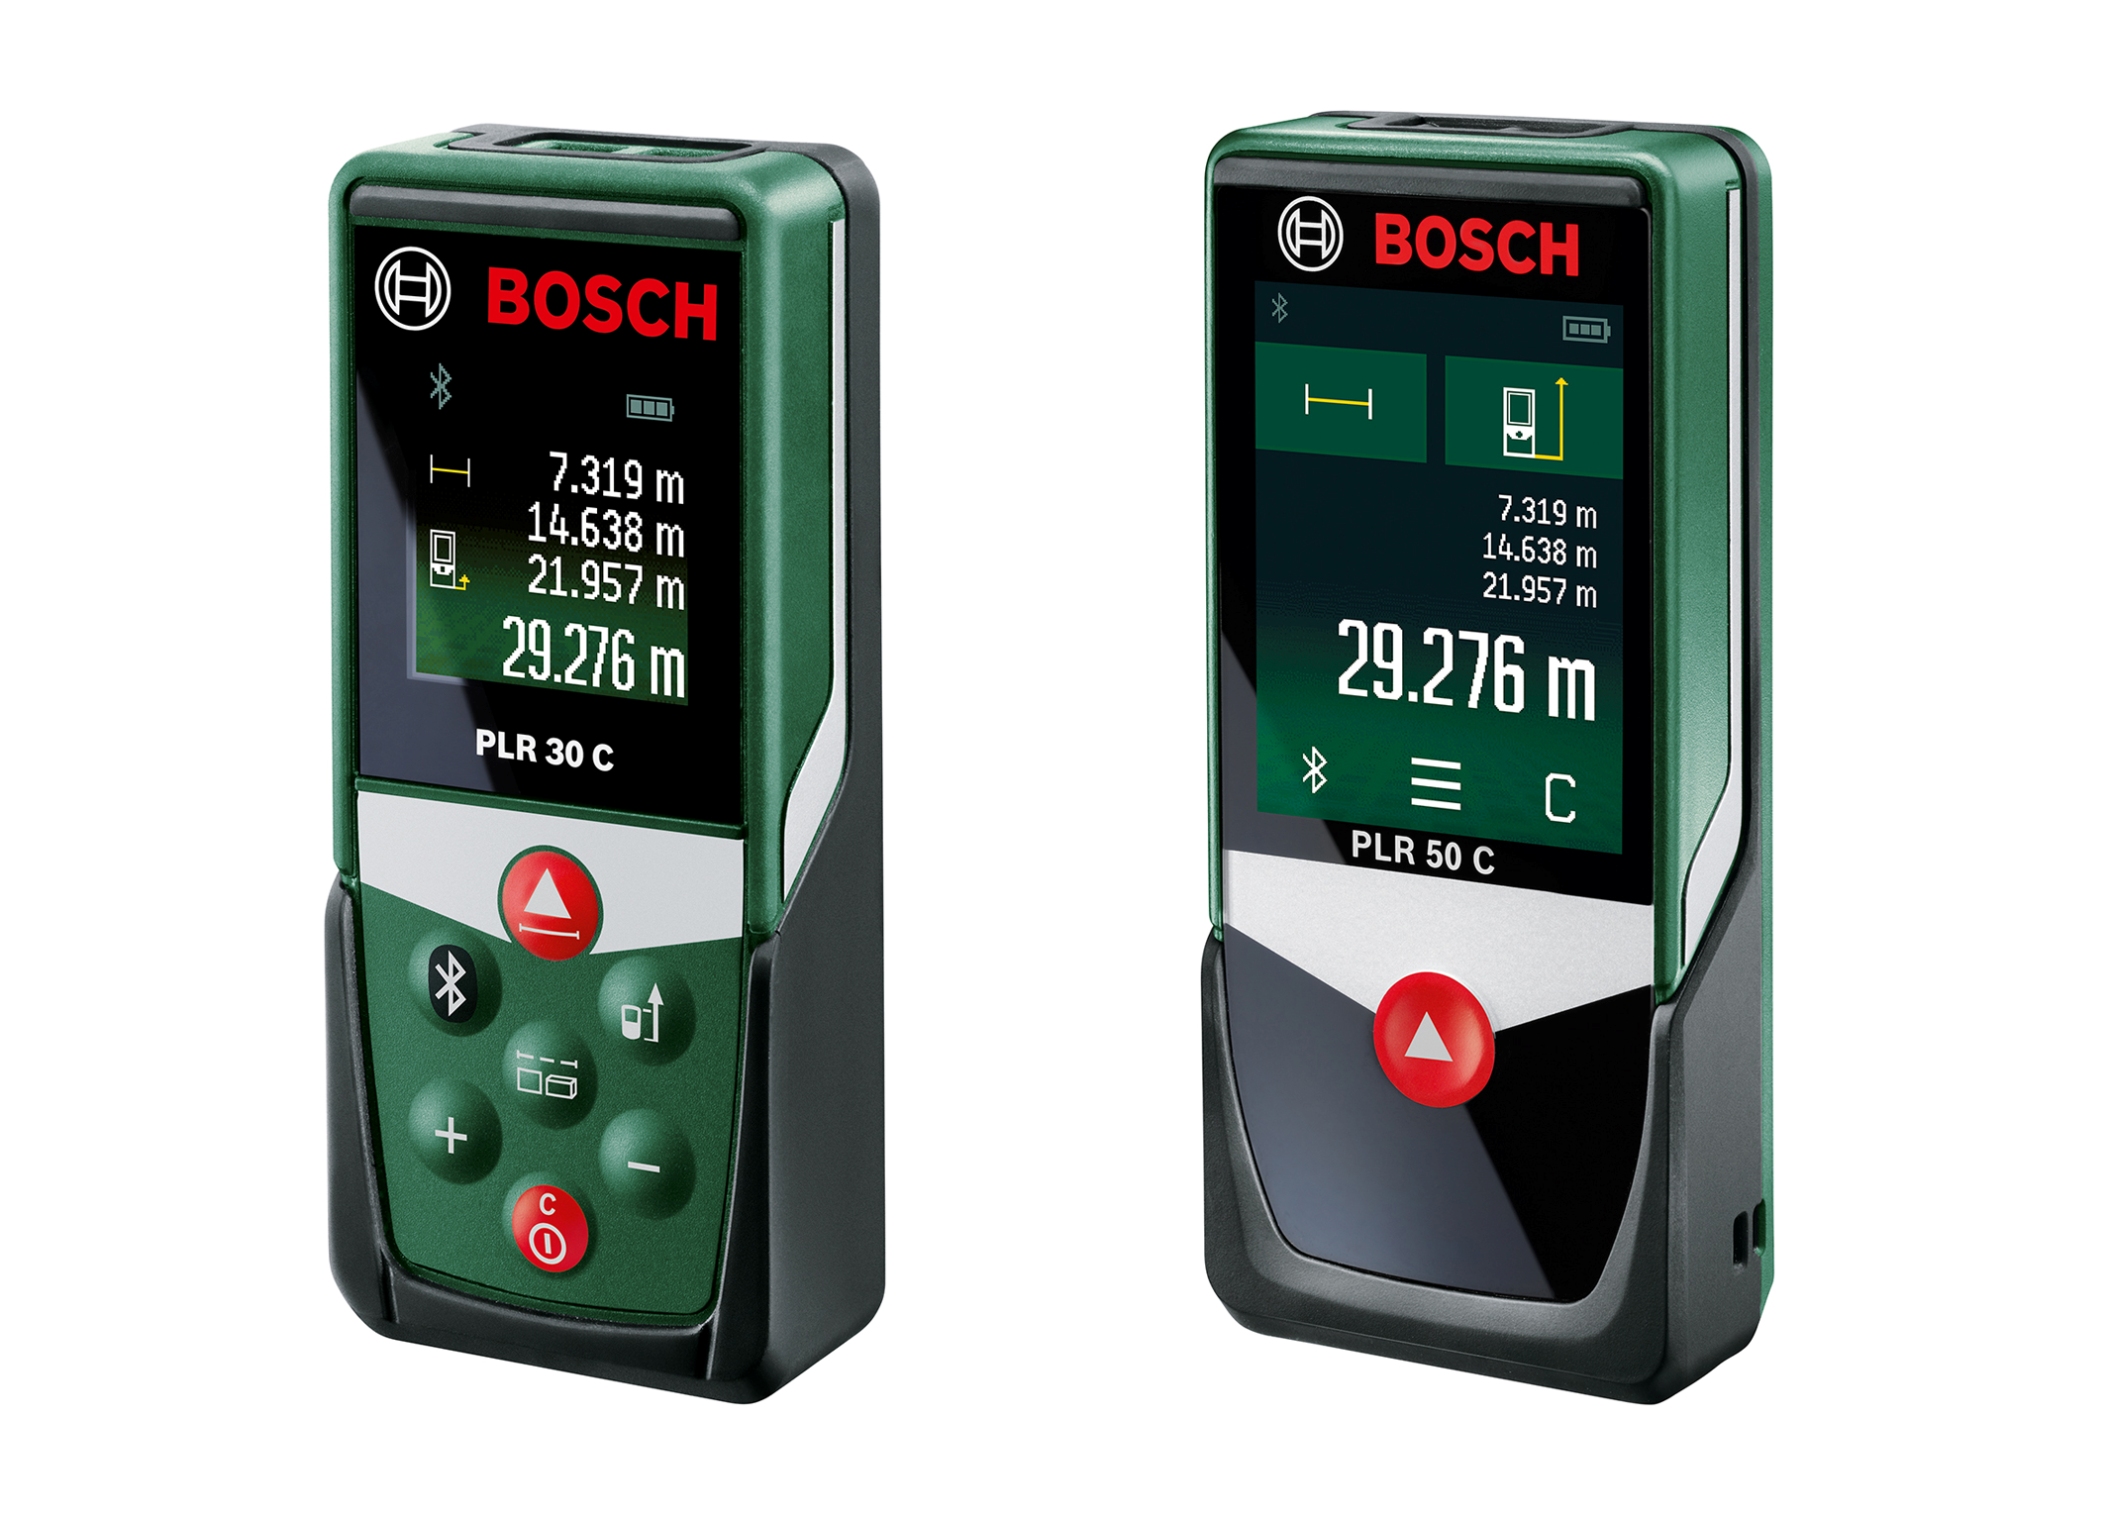 Distanziometri laser PLR 30 C e PLR 50 C - Bosch connette gli strumenti di misura con una App